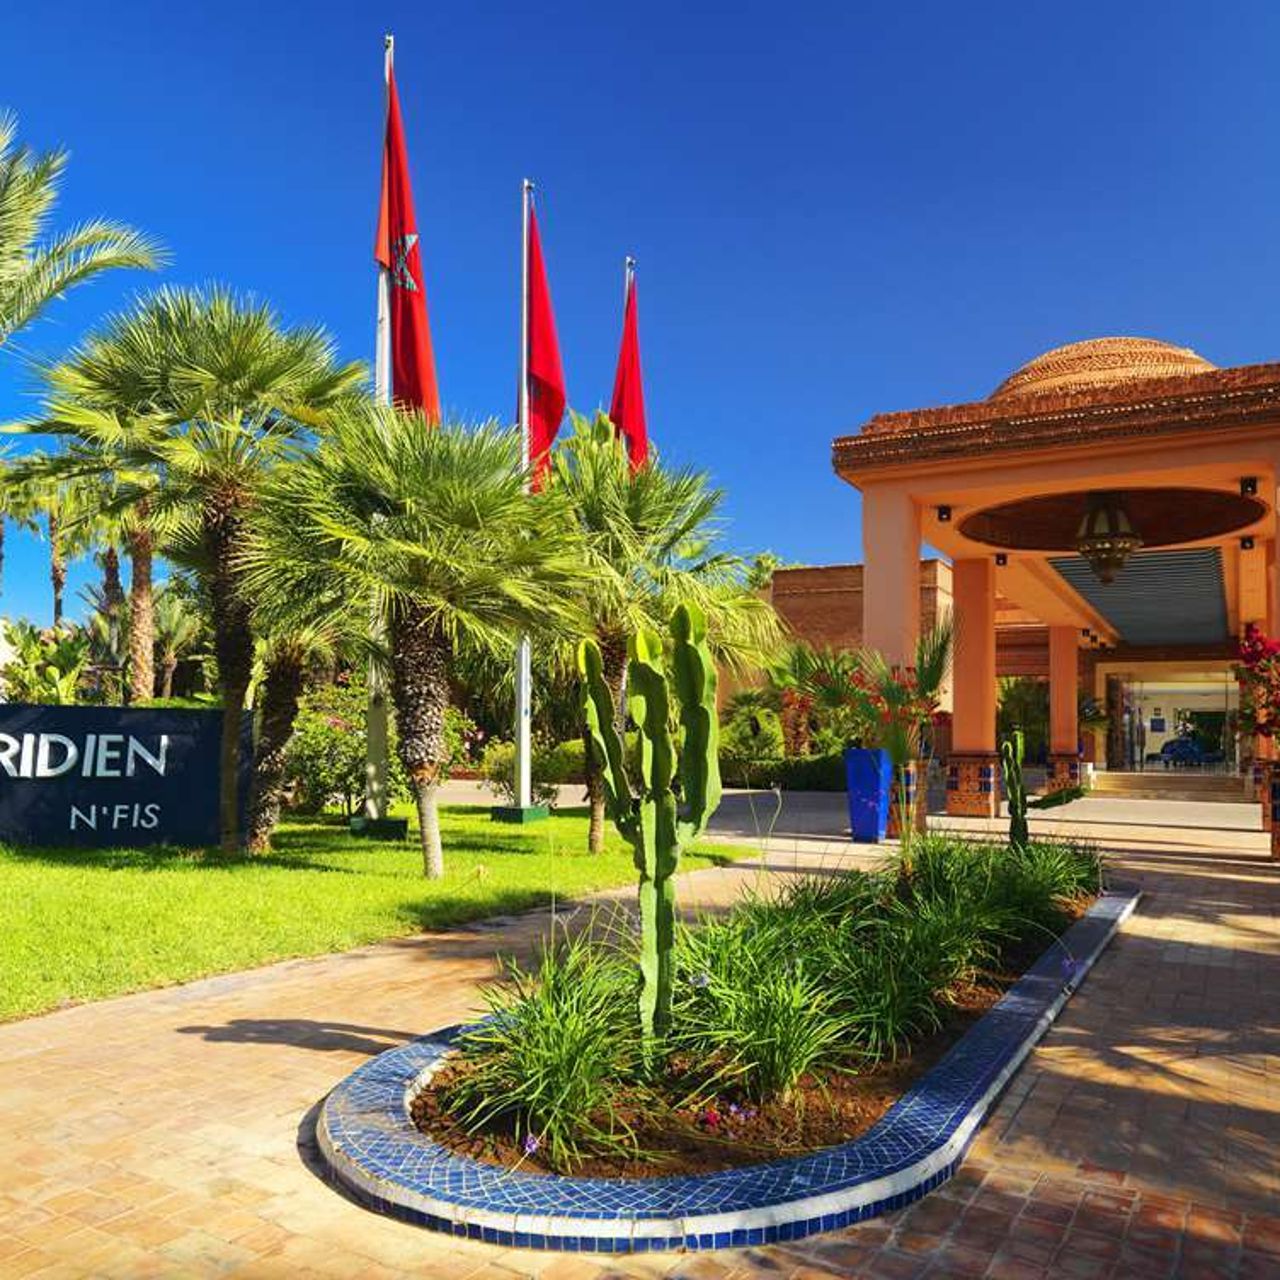 Hotel Le Meridien N-Fis - Marrakech chez HRS avec services gratuits